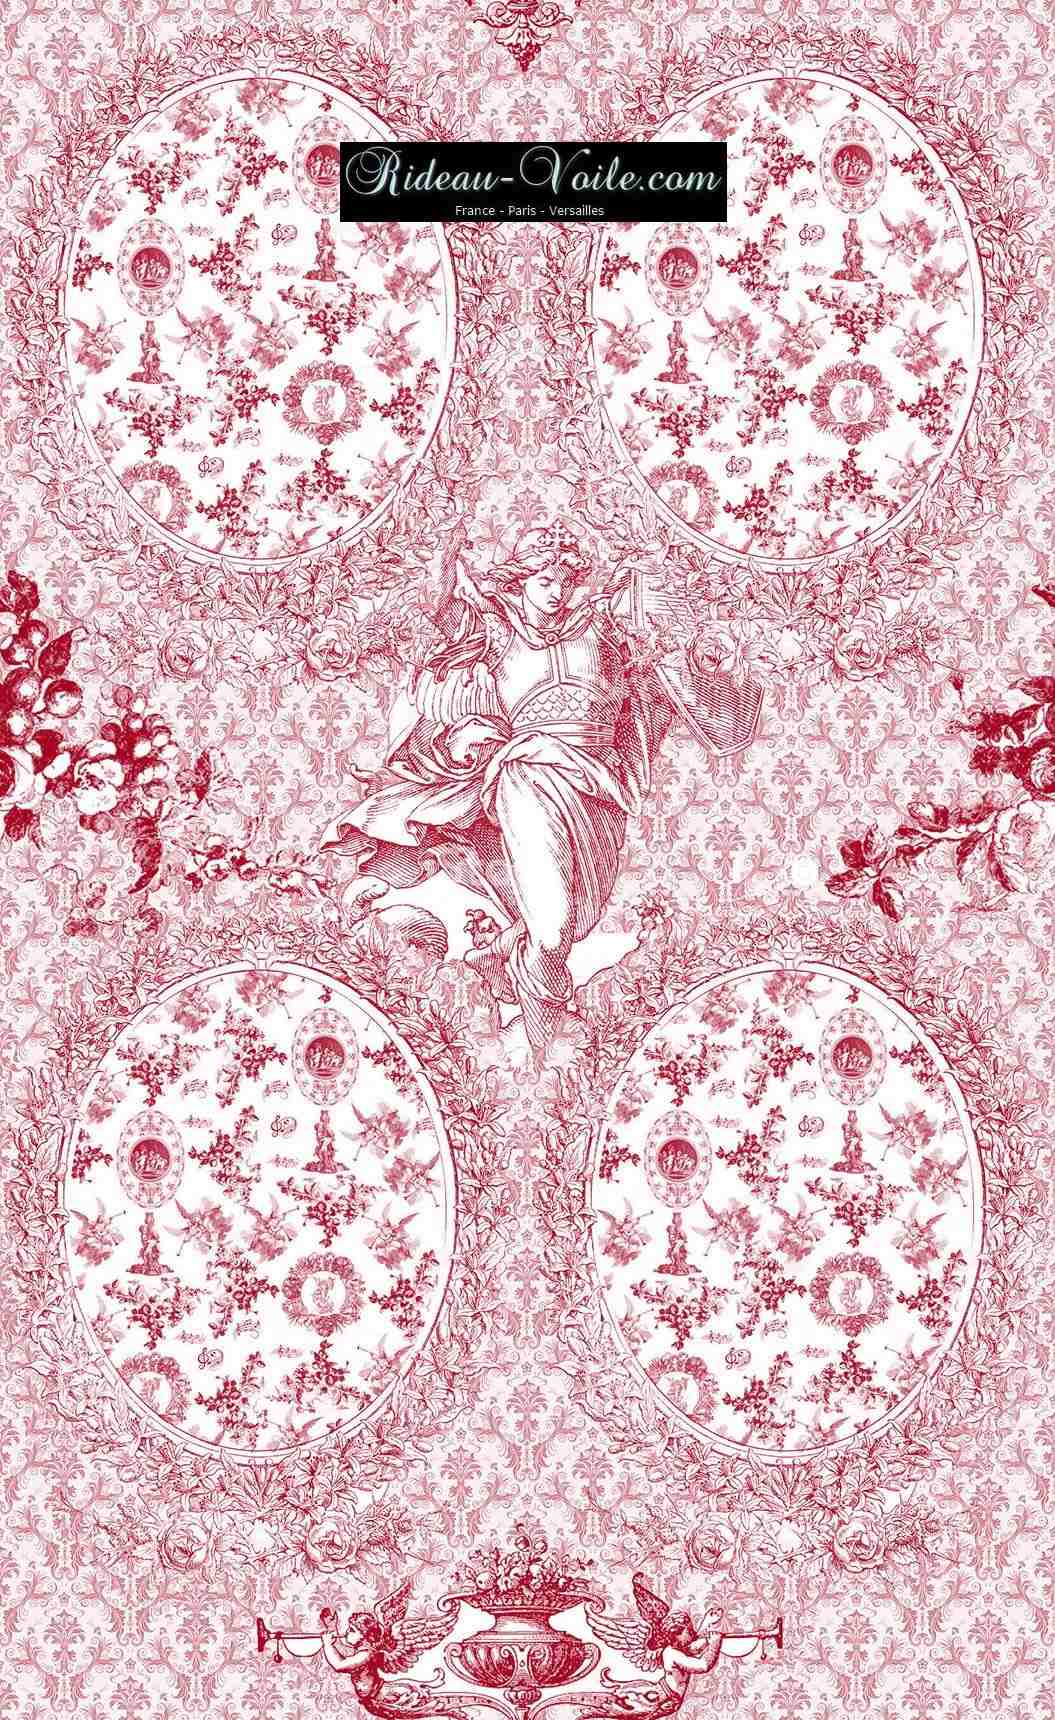 Toile de Jouy tissu ameublement motif imprimé décoration tapisserie au mètre confection sur mesure rouge fleuri